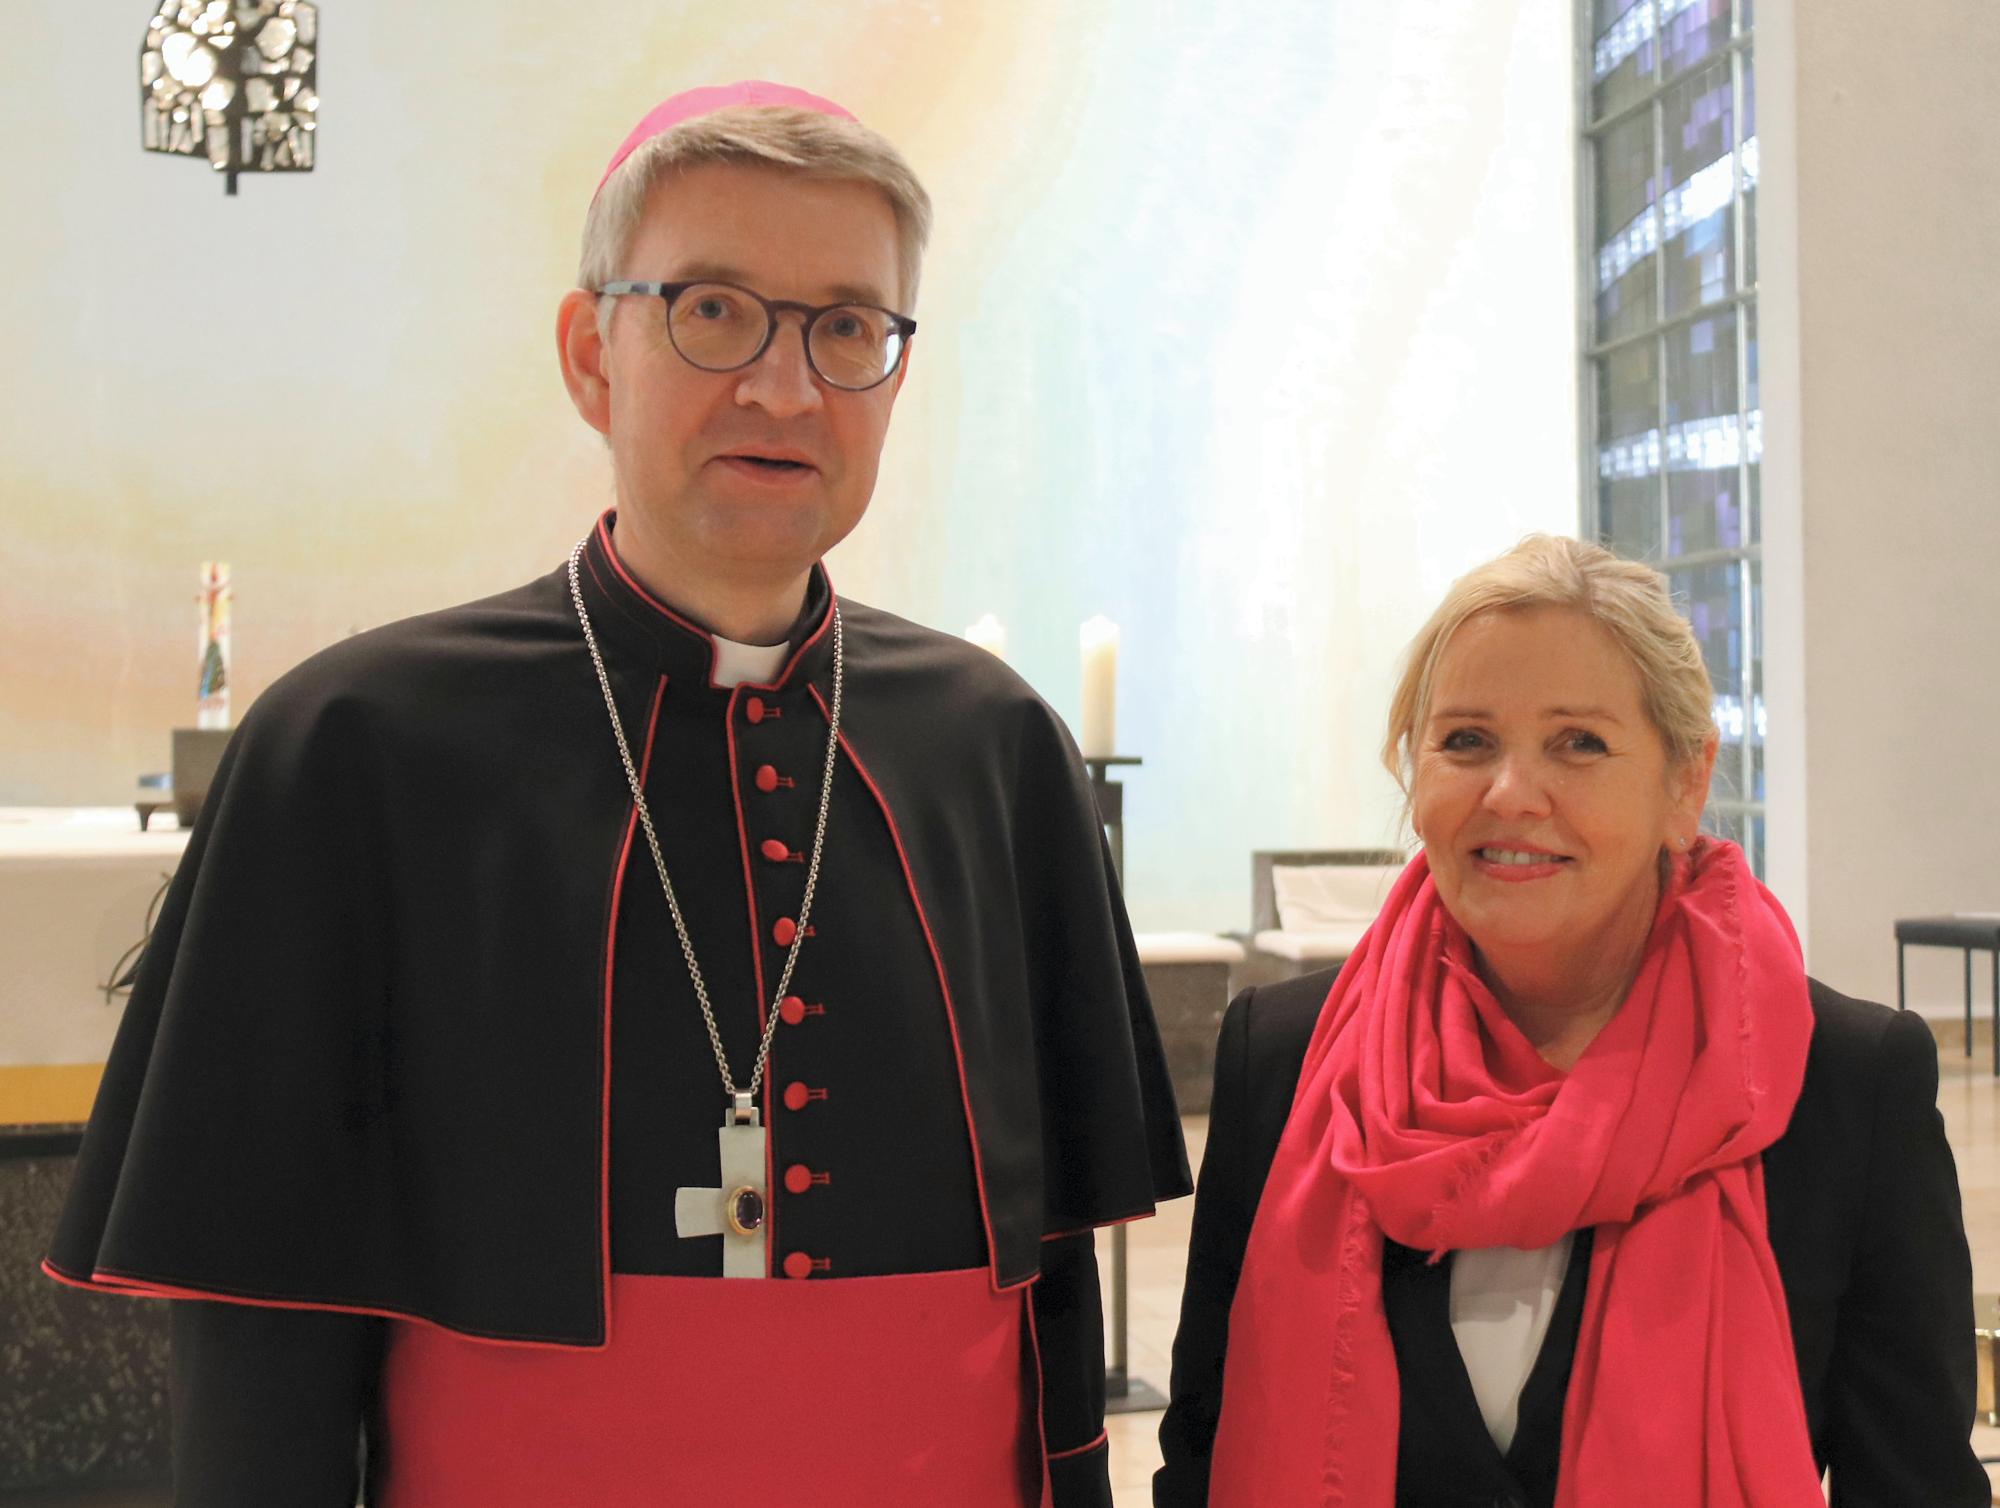 Offenbach, 29.1.2020: Bischof Peter Kohlgraf und Marie-Luise Trocholepczy, die scheidende Leiterin der Marienschule in Offenbach